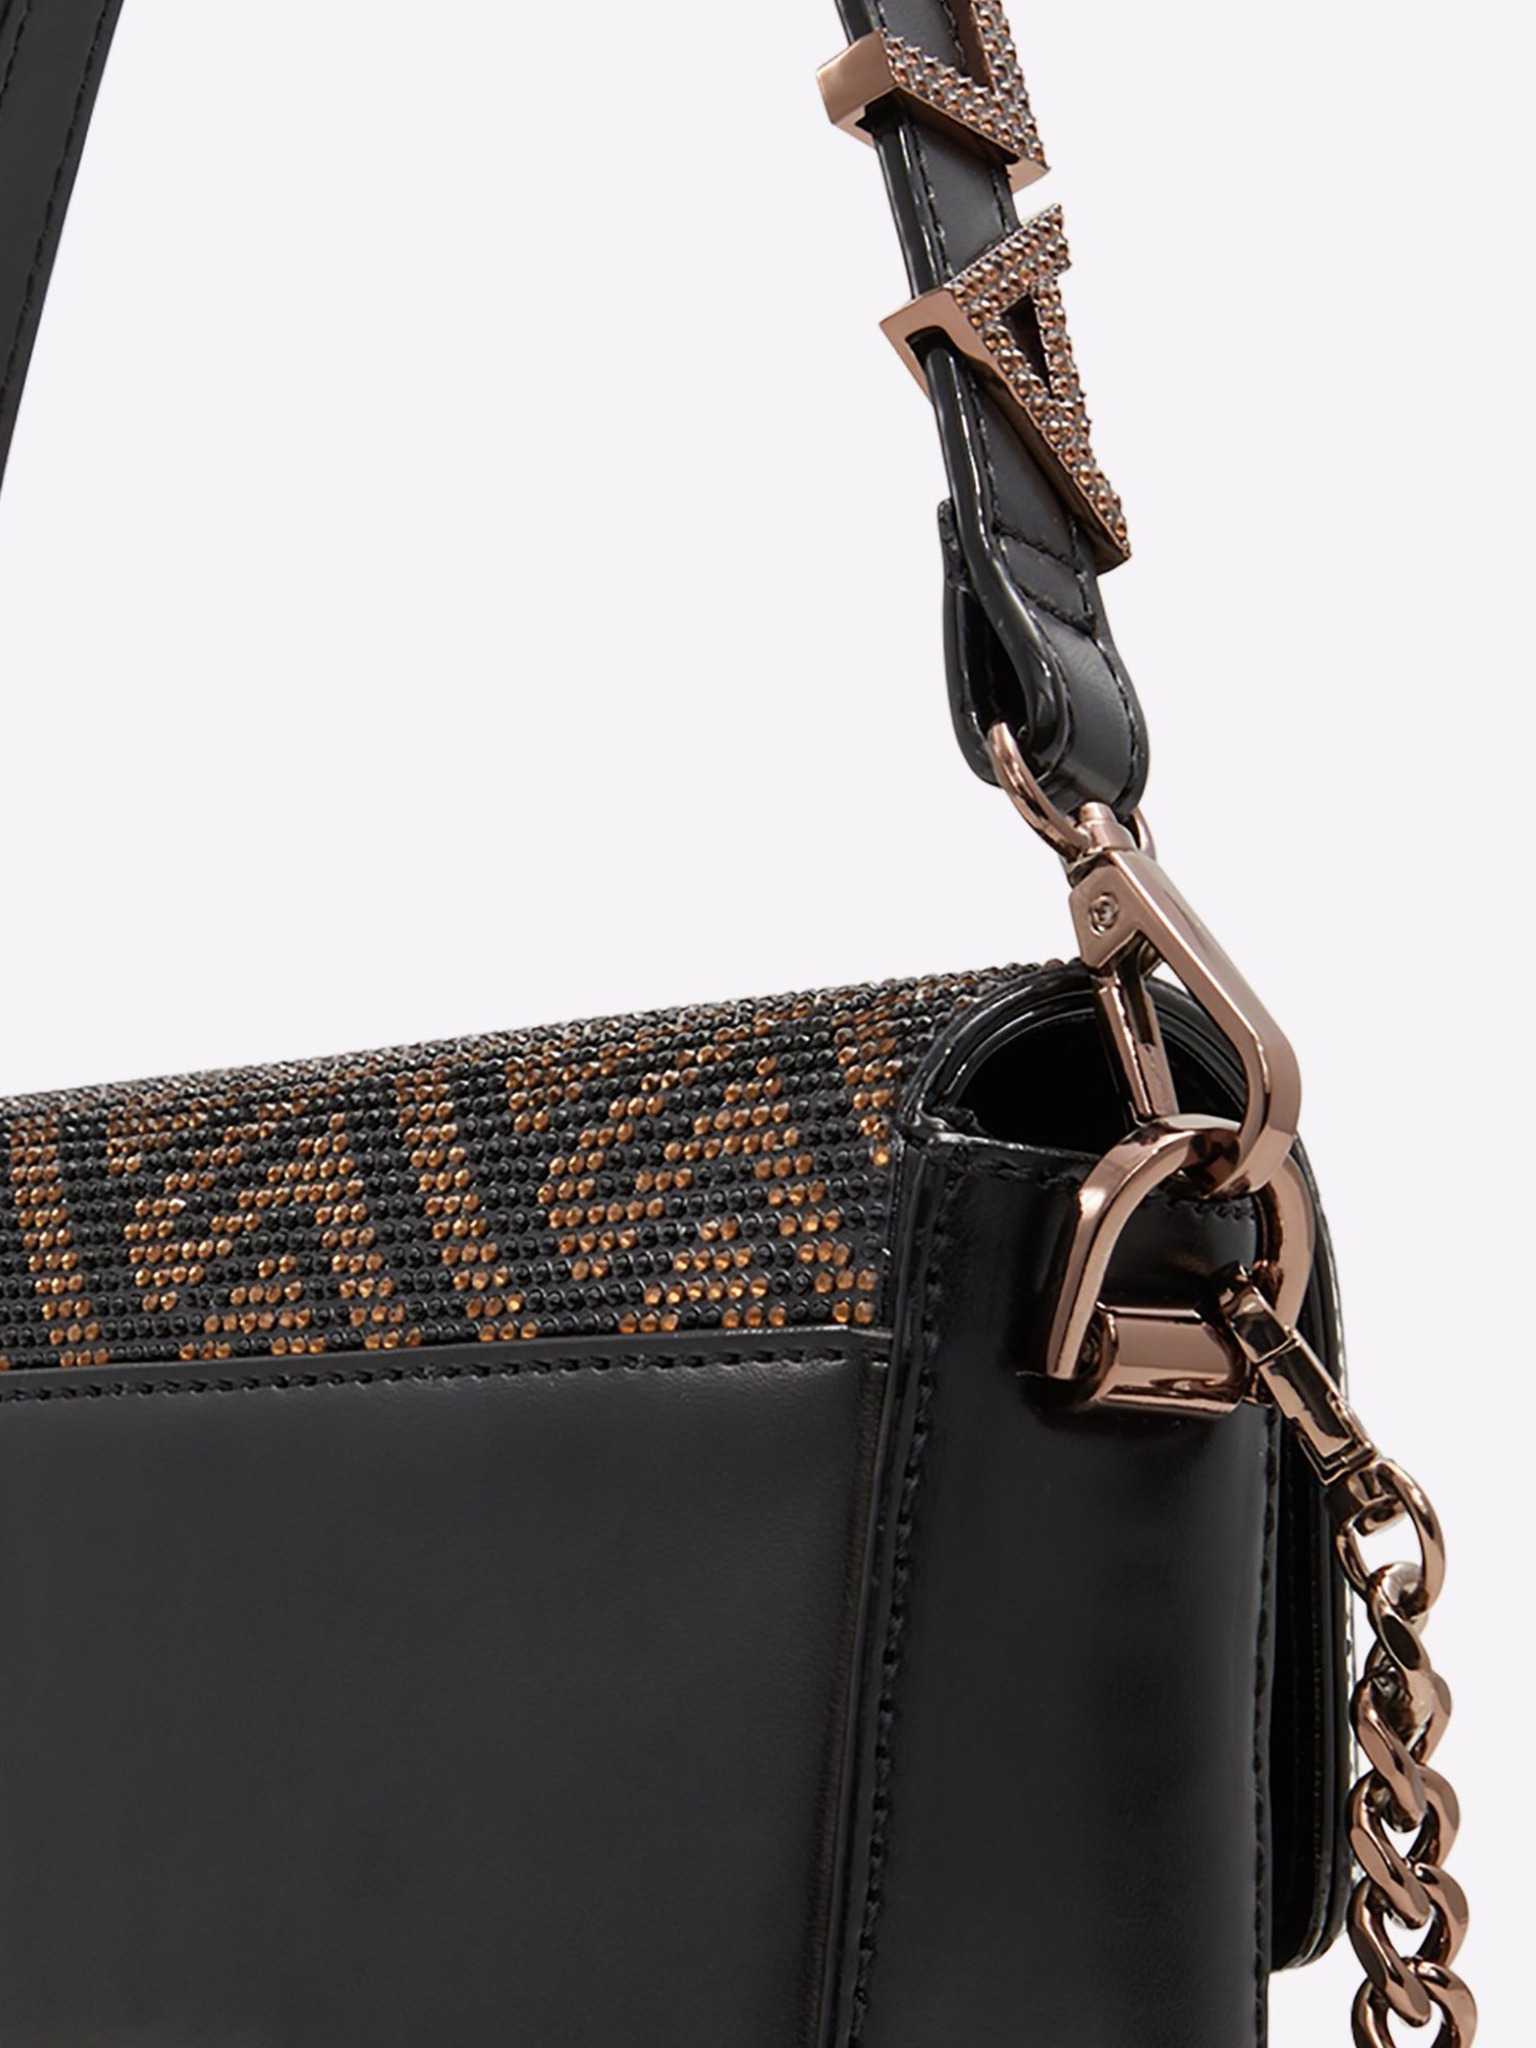 LUSSO Crossbody Bags for Women